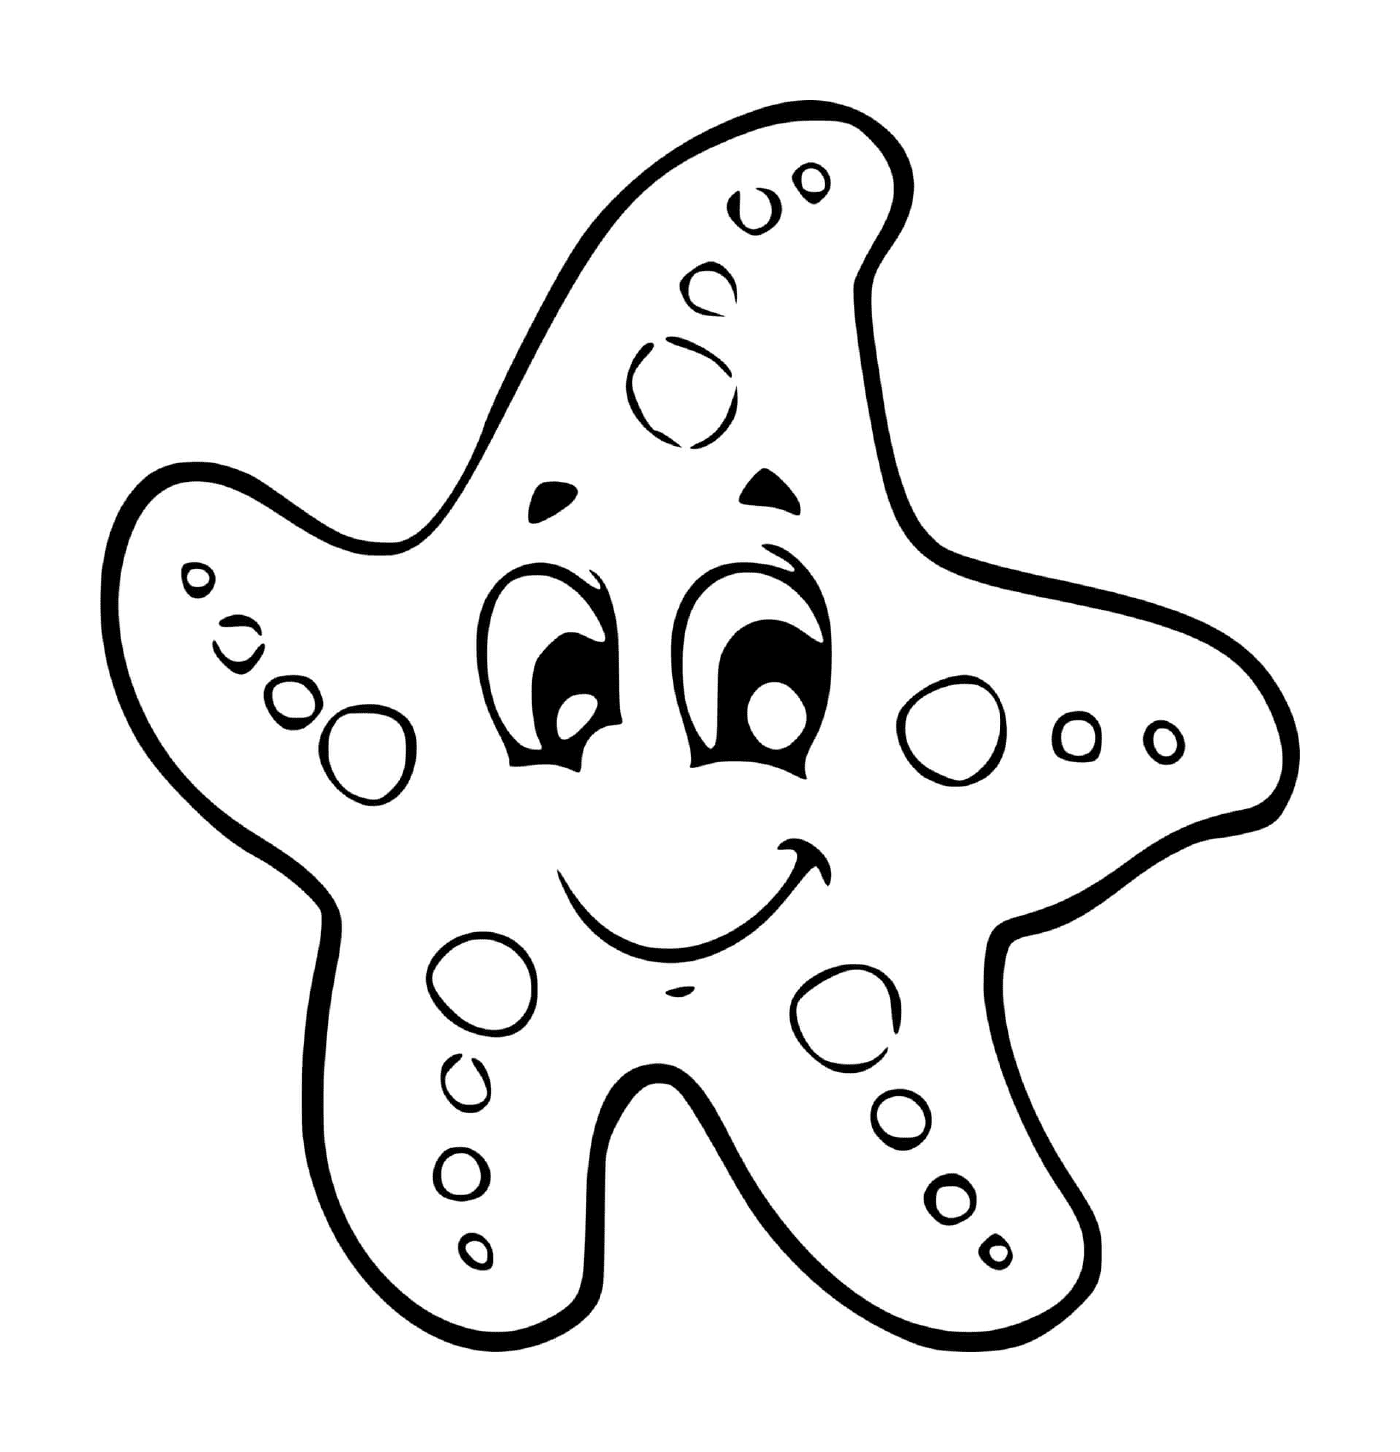  Una estrella del mar para niños en gran sección maternal 